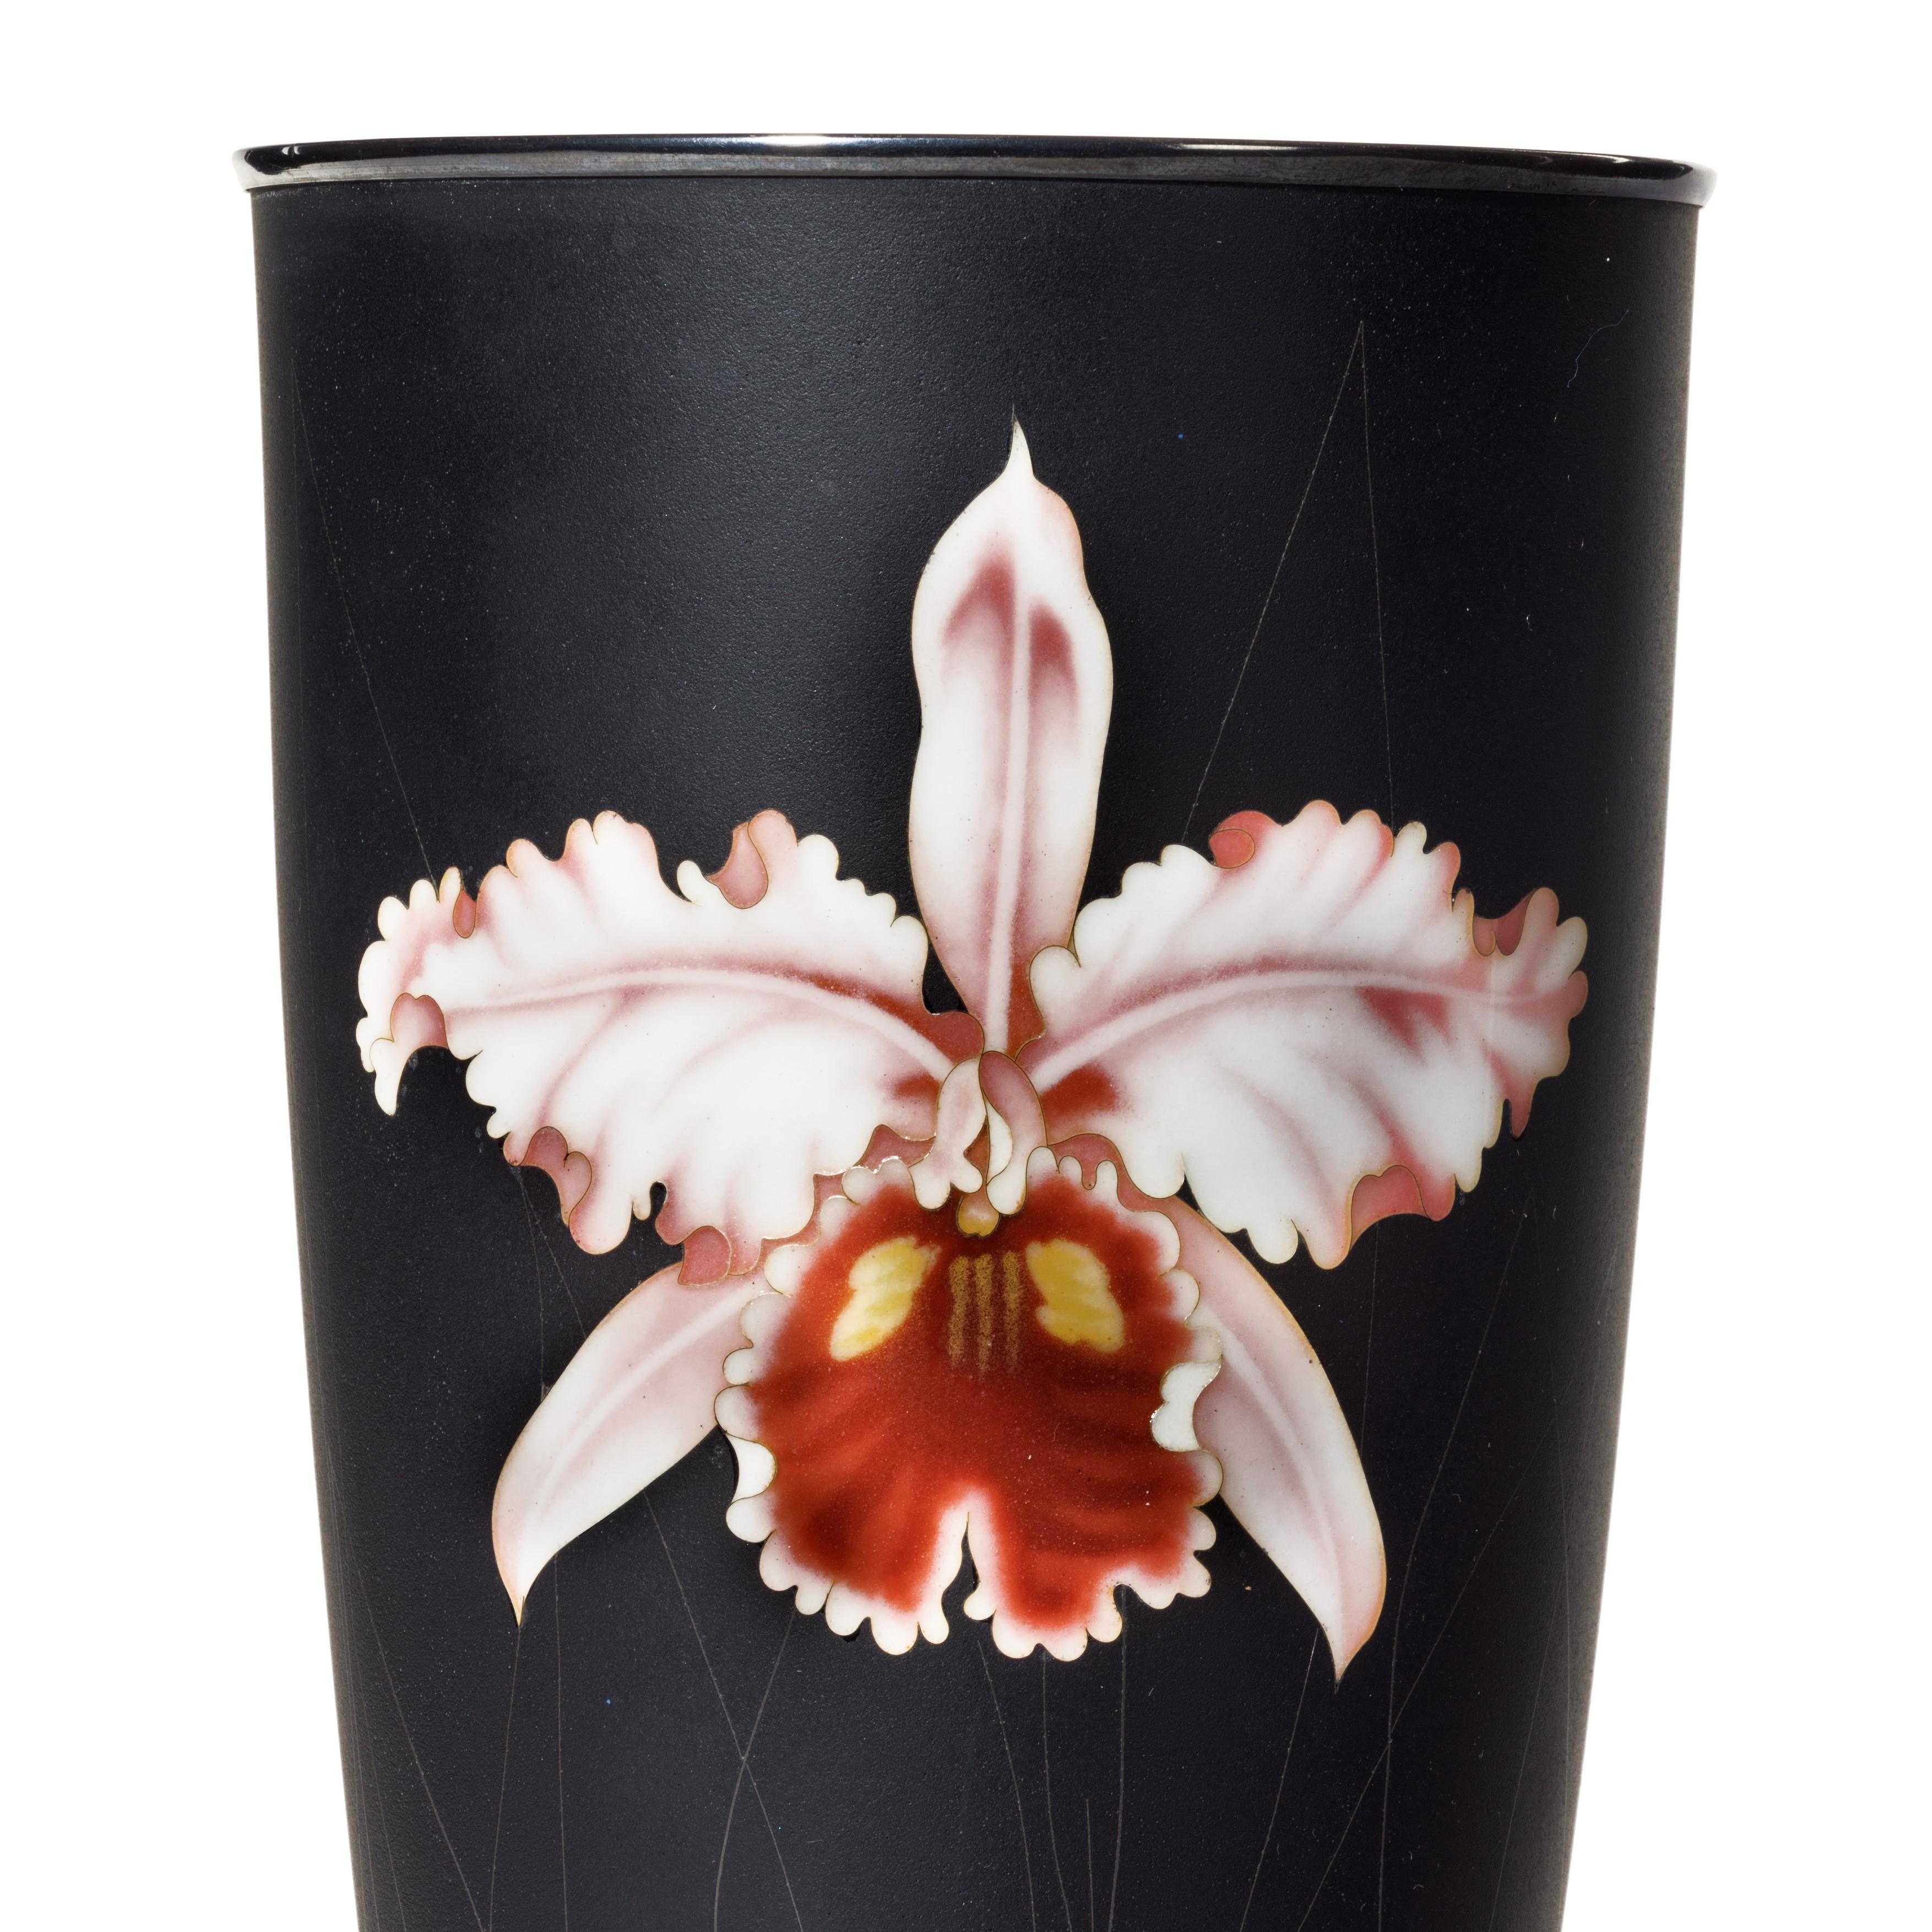 Eine stilvolle Cloisonné-Emaille-Becher-Vase von Ando aus der Showa-Periode mit einer einzelnen rosafarbenen Orchidee auf mattschwarzem Grund, mit der Ando-Drahtmarke im Sockel und gestempelten Silberbeschlägen.  Japanisch, um 1950.

Höhe 10 Zoll